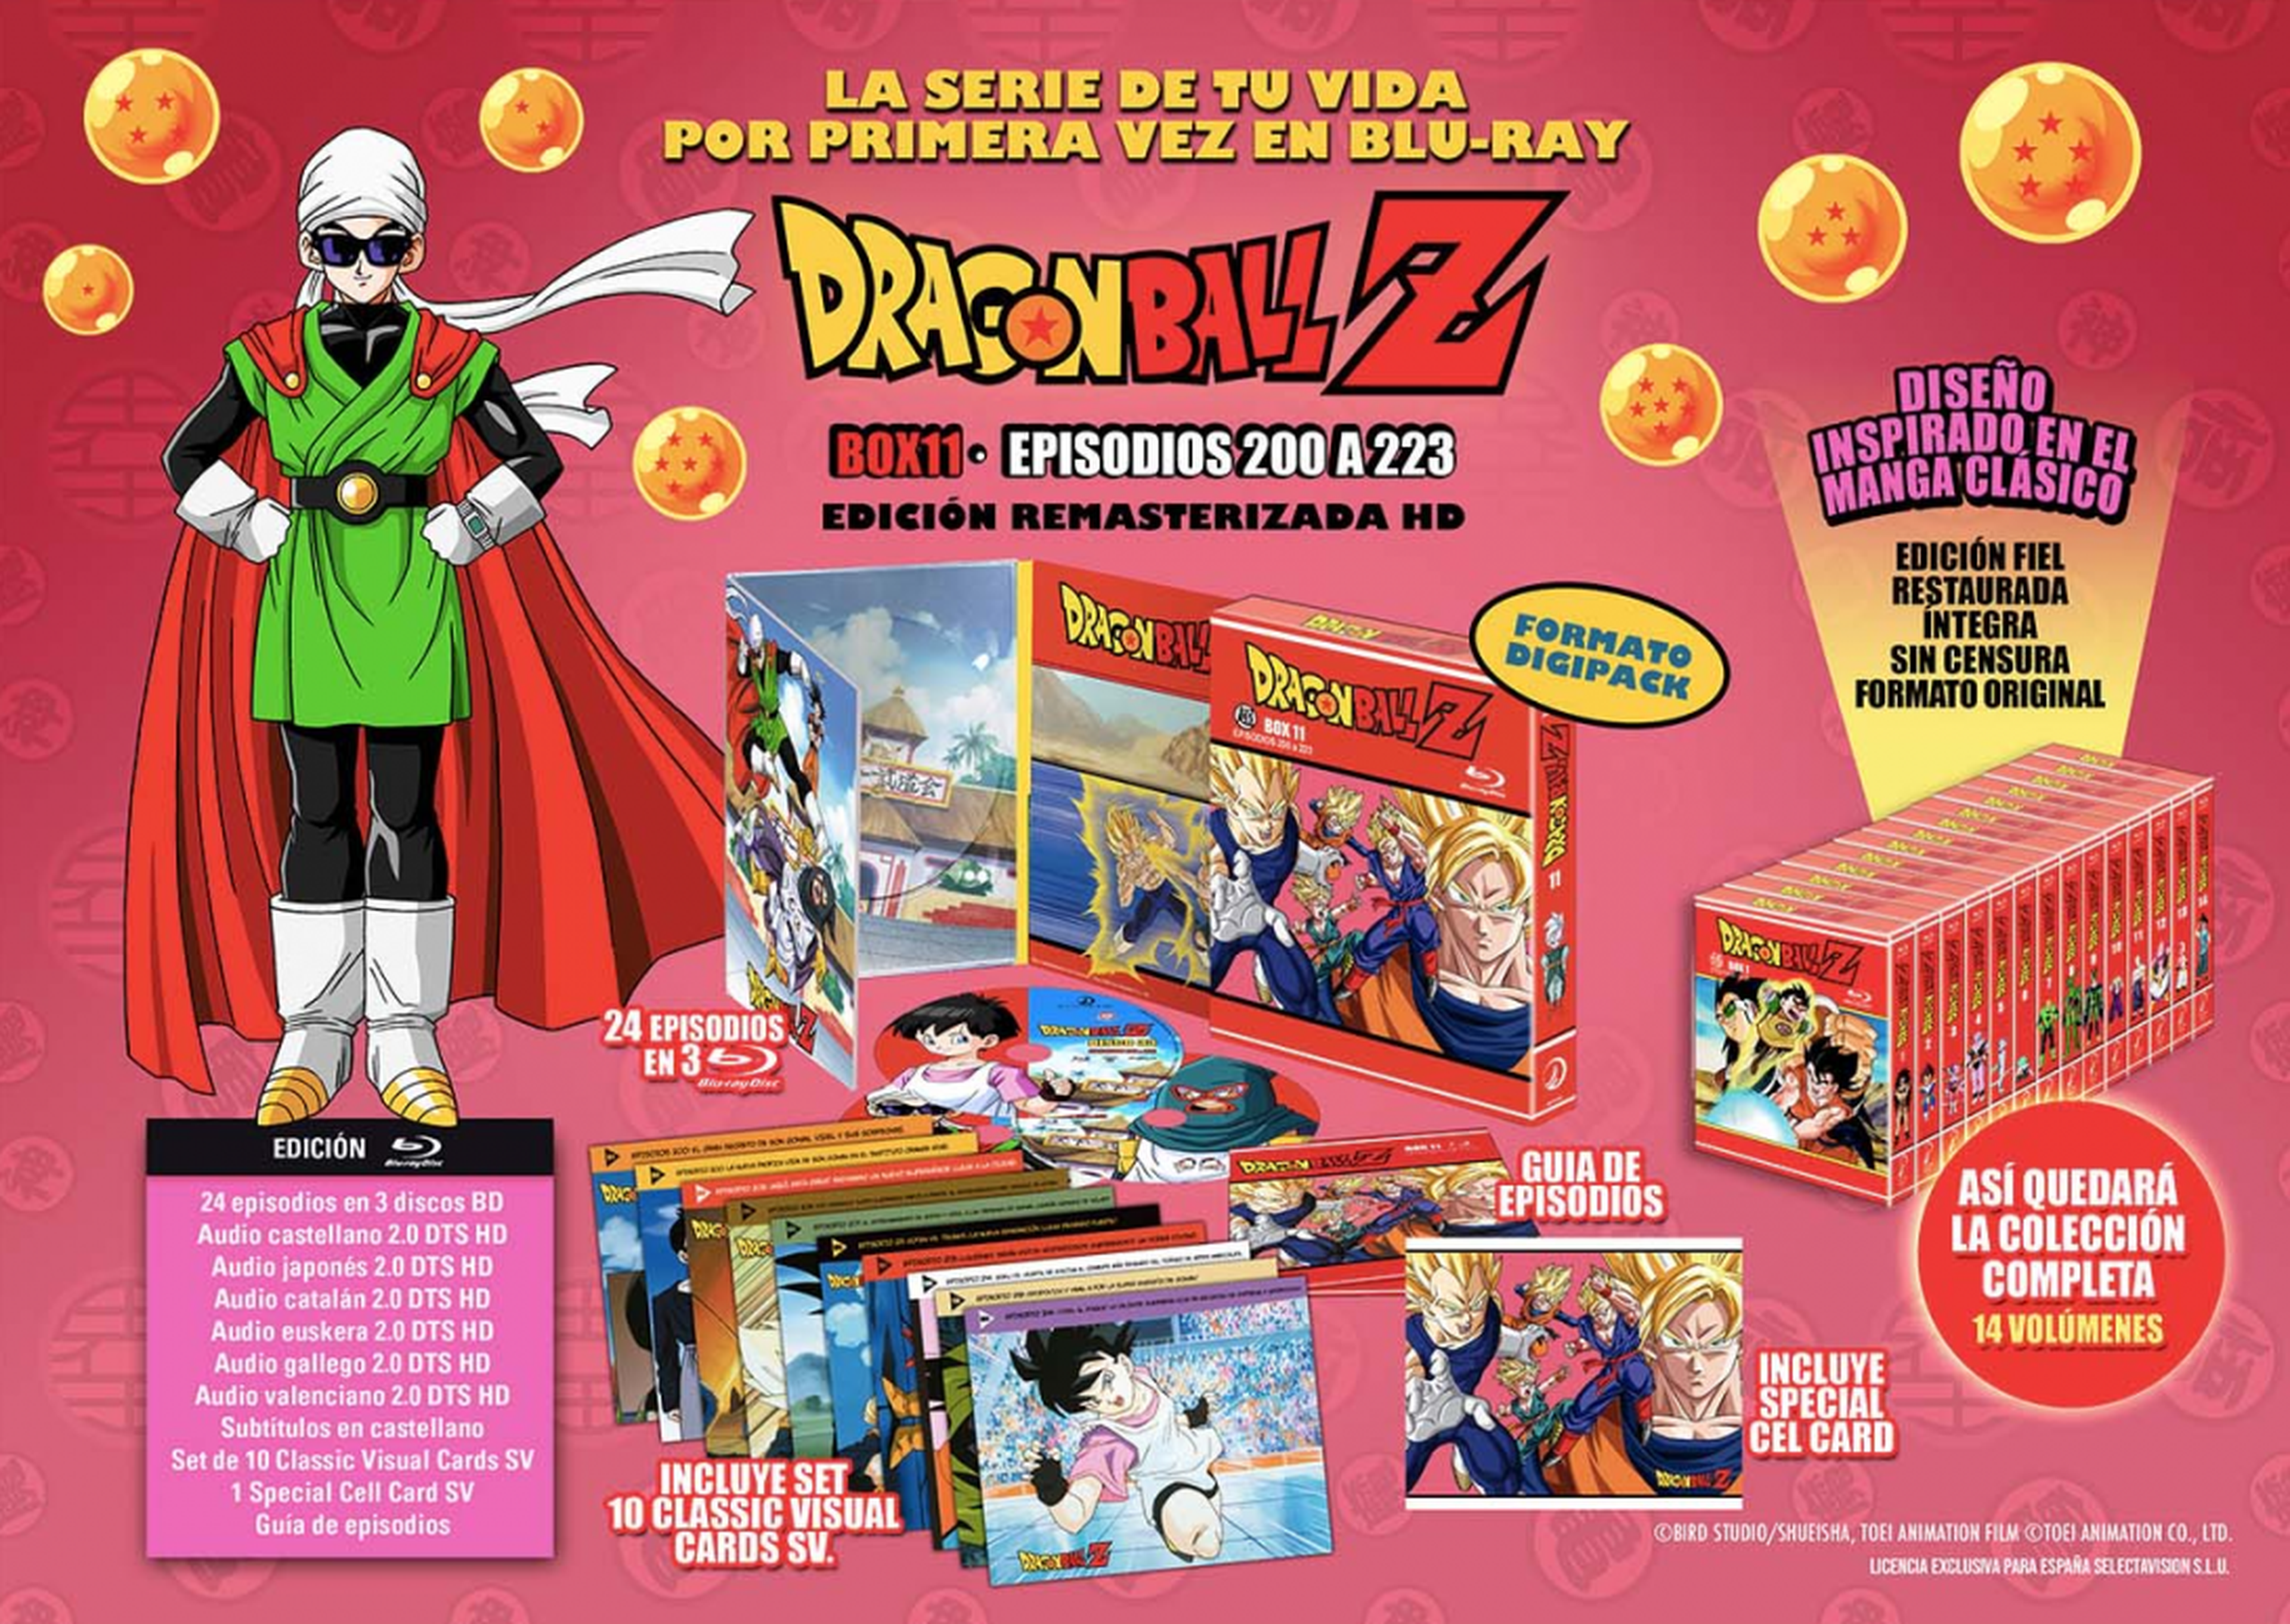 Dragon Ball Z - Desvelada la fecha de lanzamiento y portada del Box 11 de la serie en Blu-ray. ¡Comienza la Saga de Buu en HD!